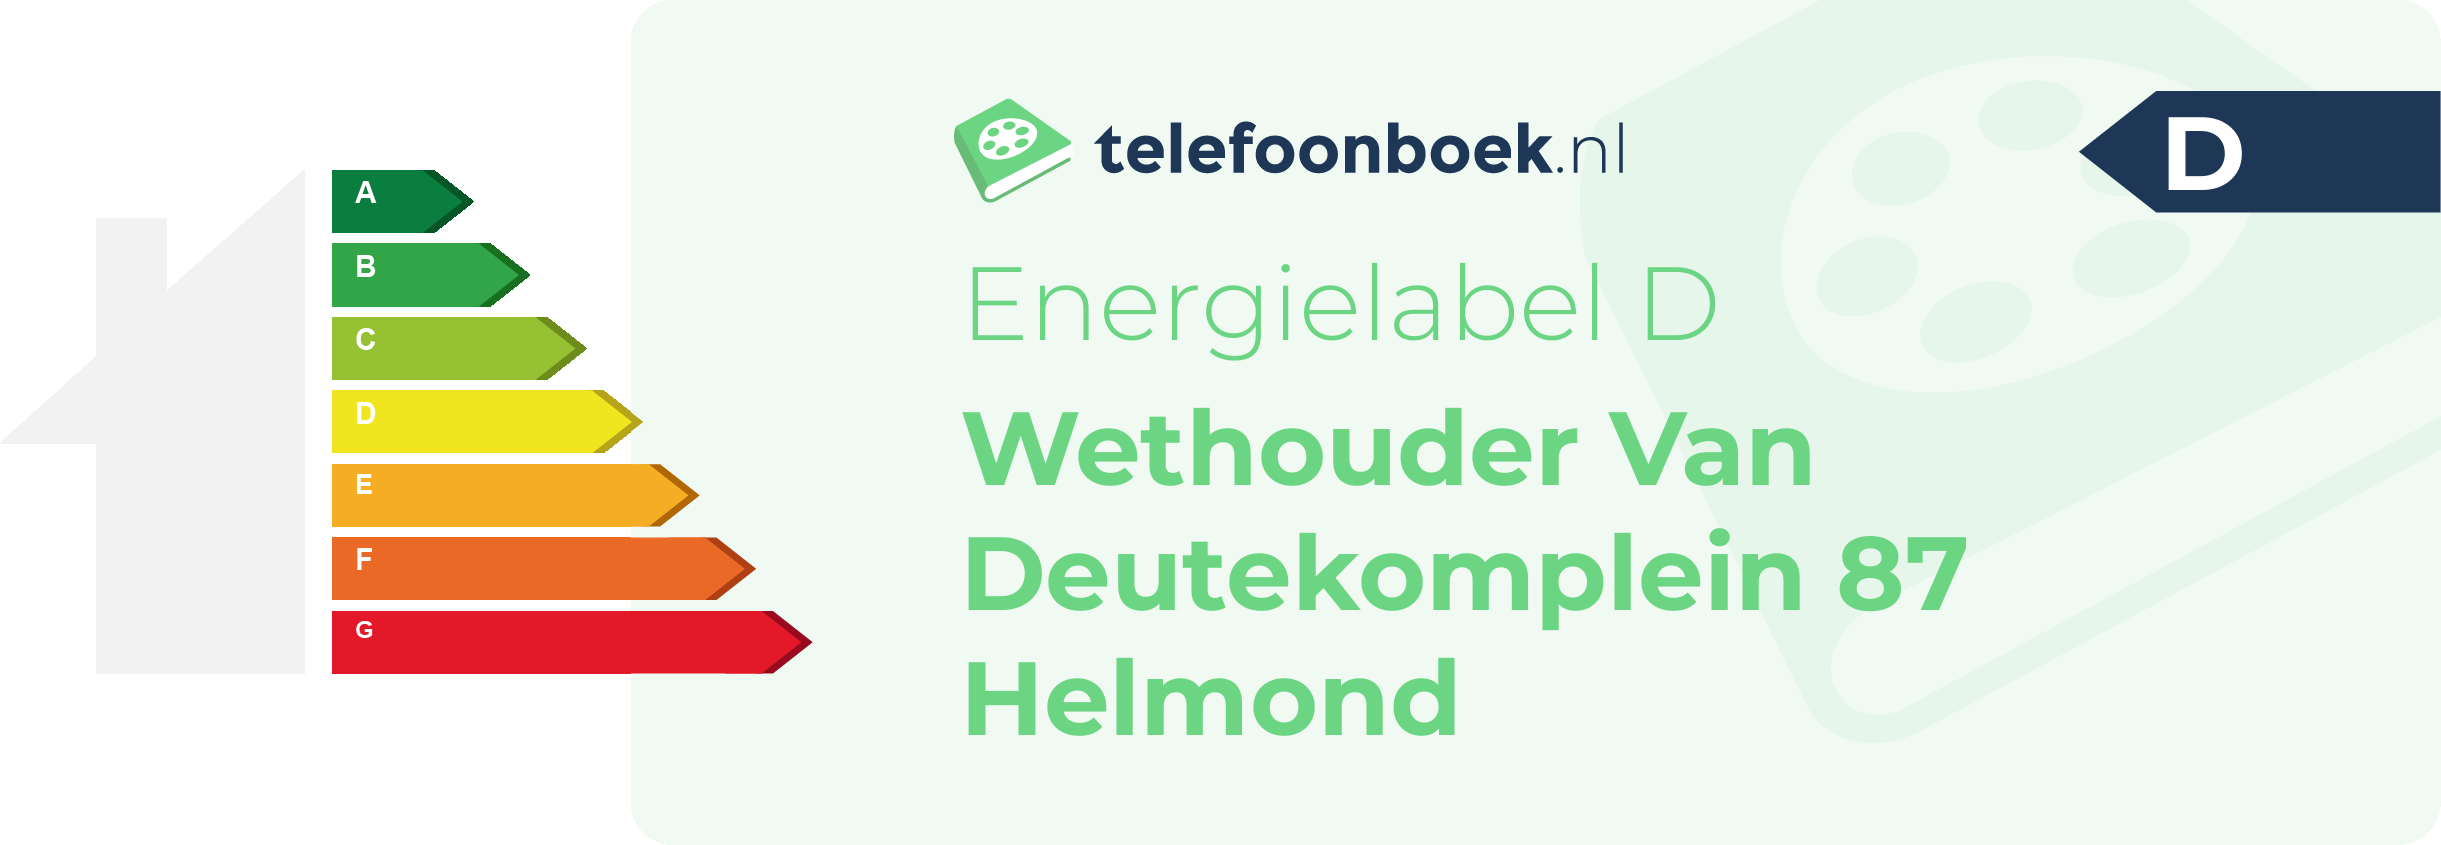 Energielabel Wethouder Van Deutekomplein 87 Helmond